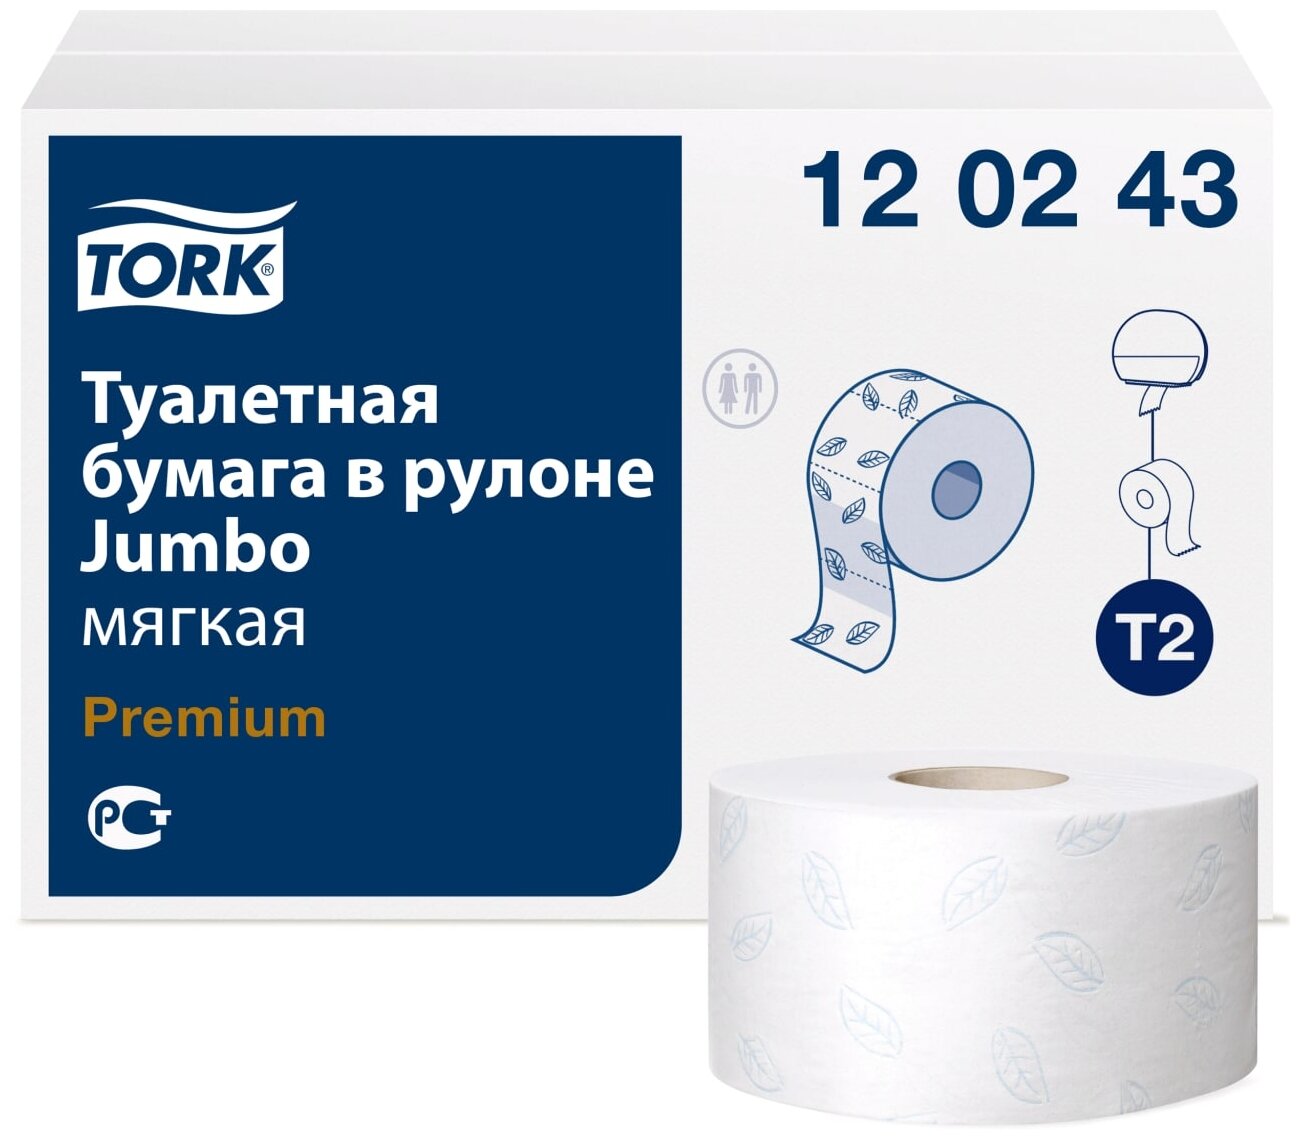 Туалетная бумага TORK 120 243